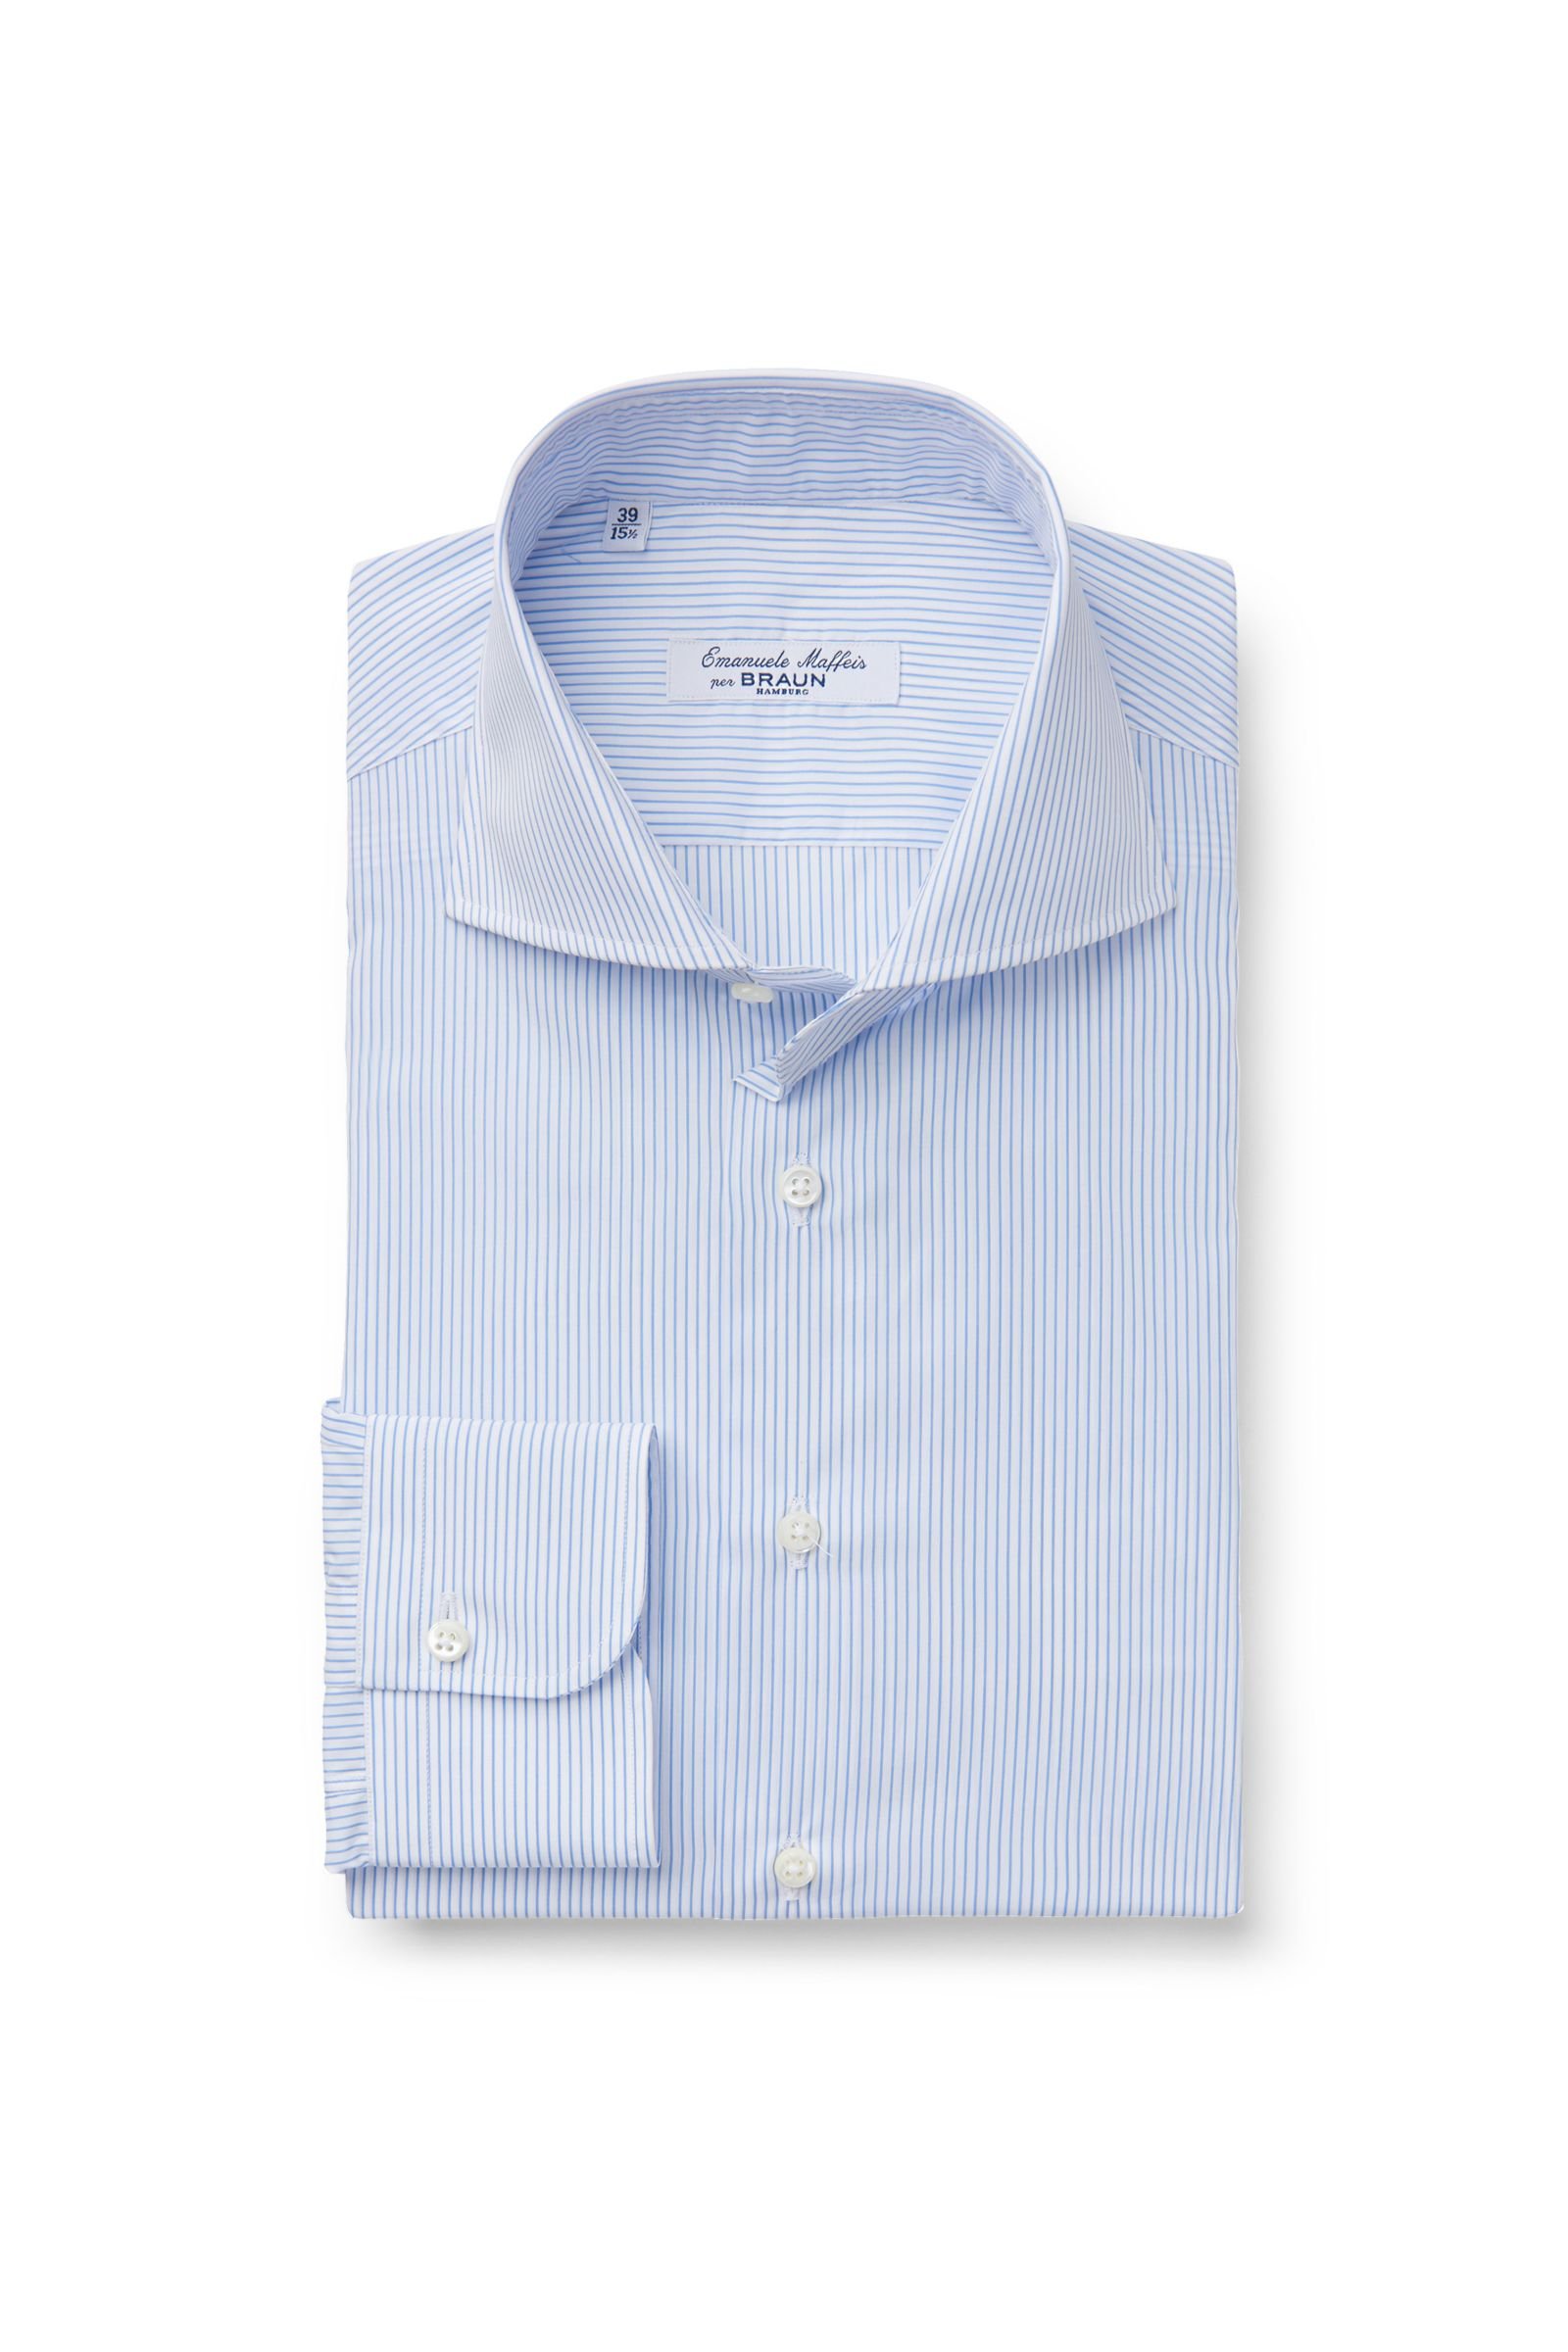 Business shirt 'Oscar' shark collar light blue striped